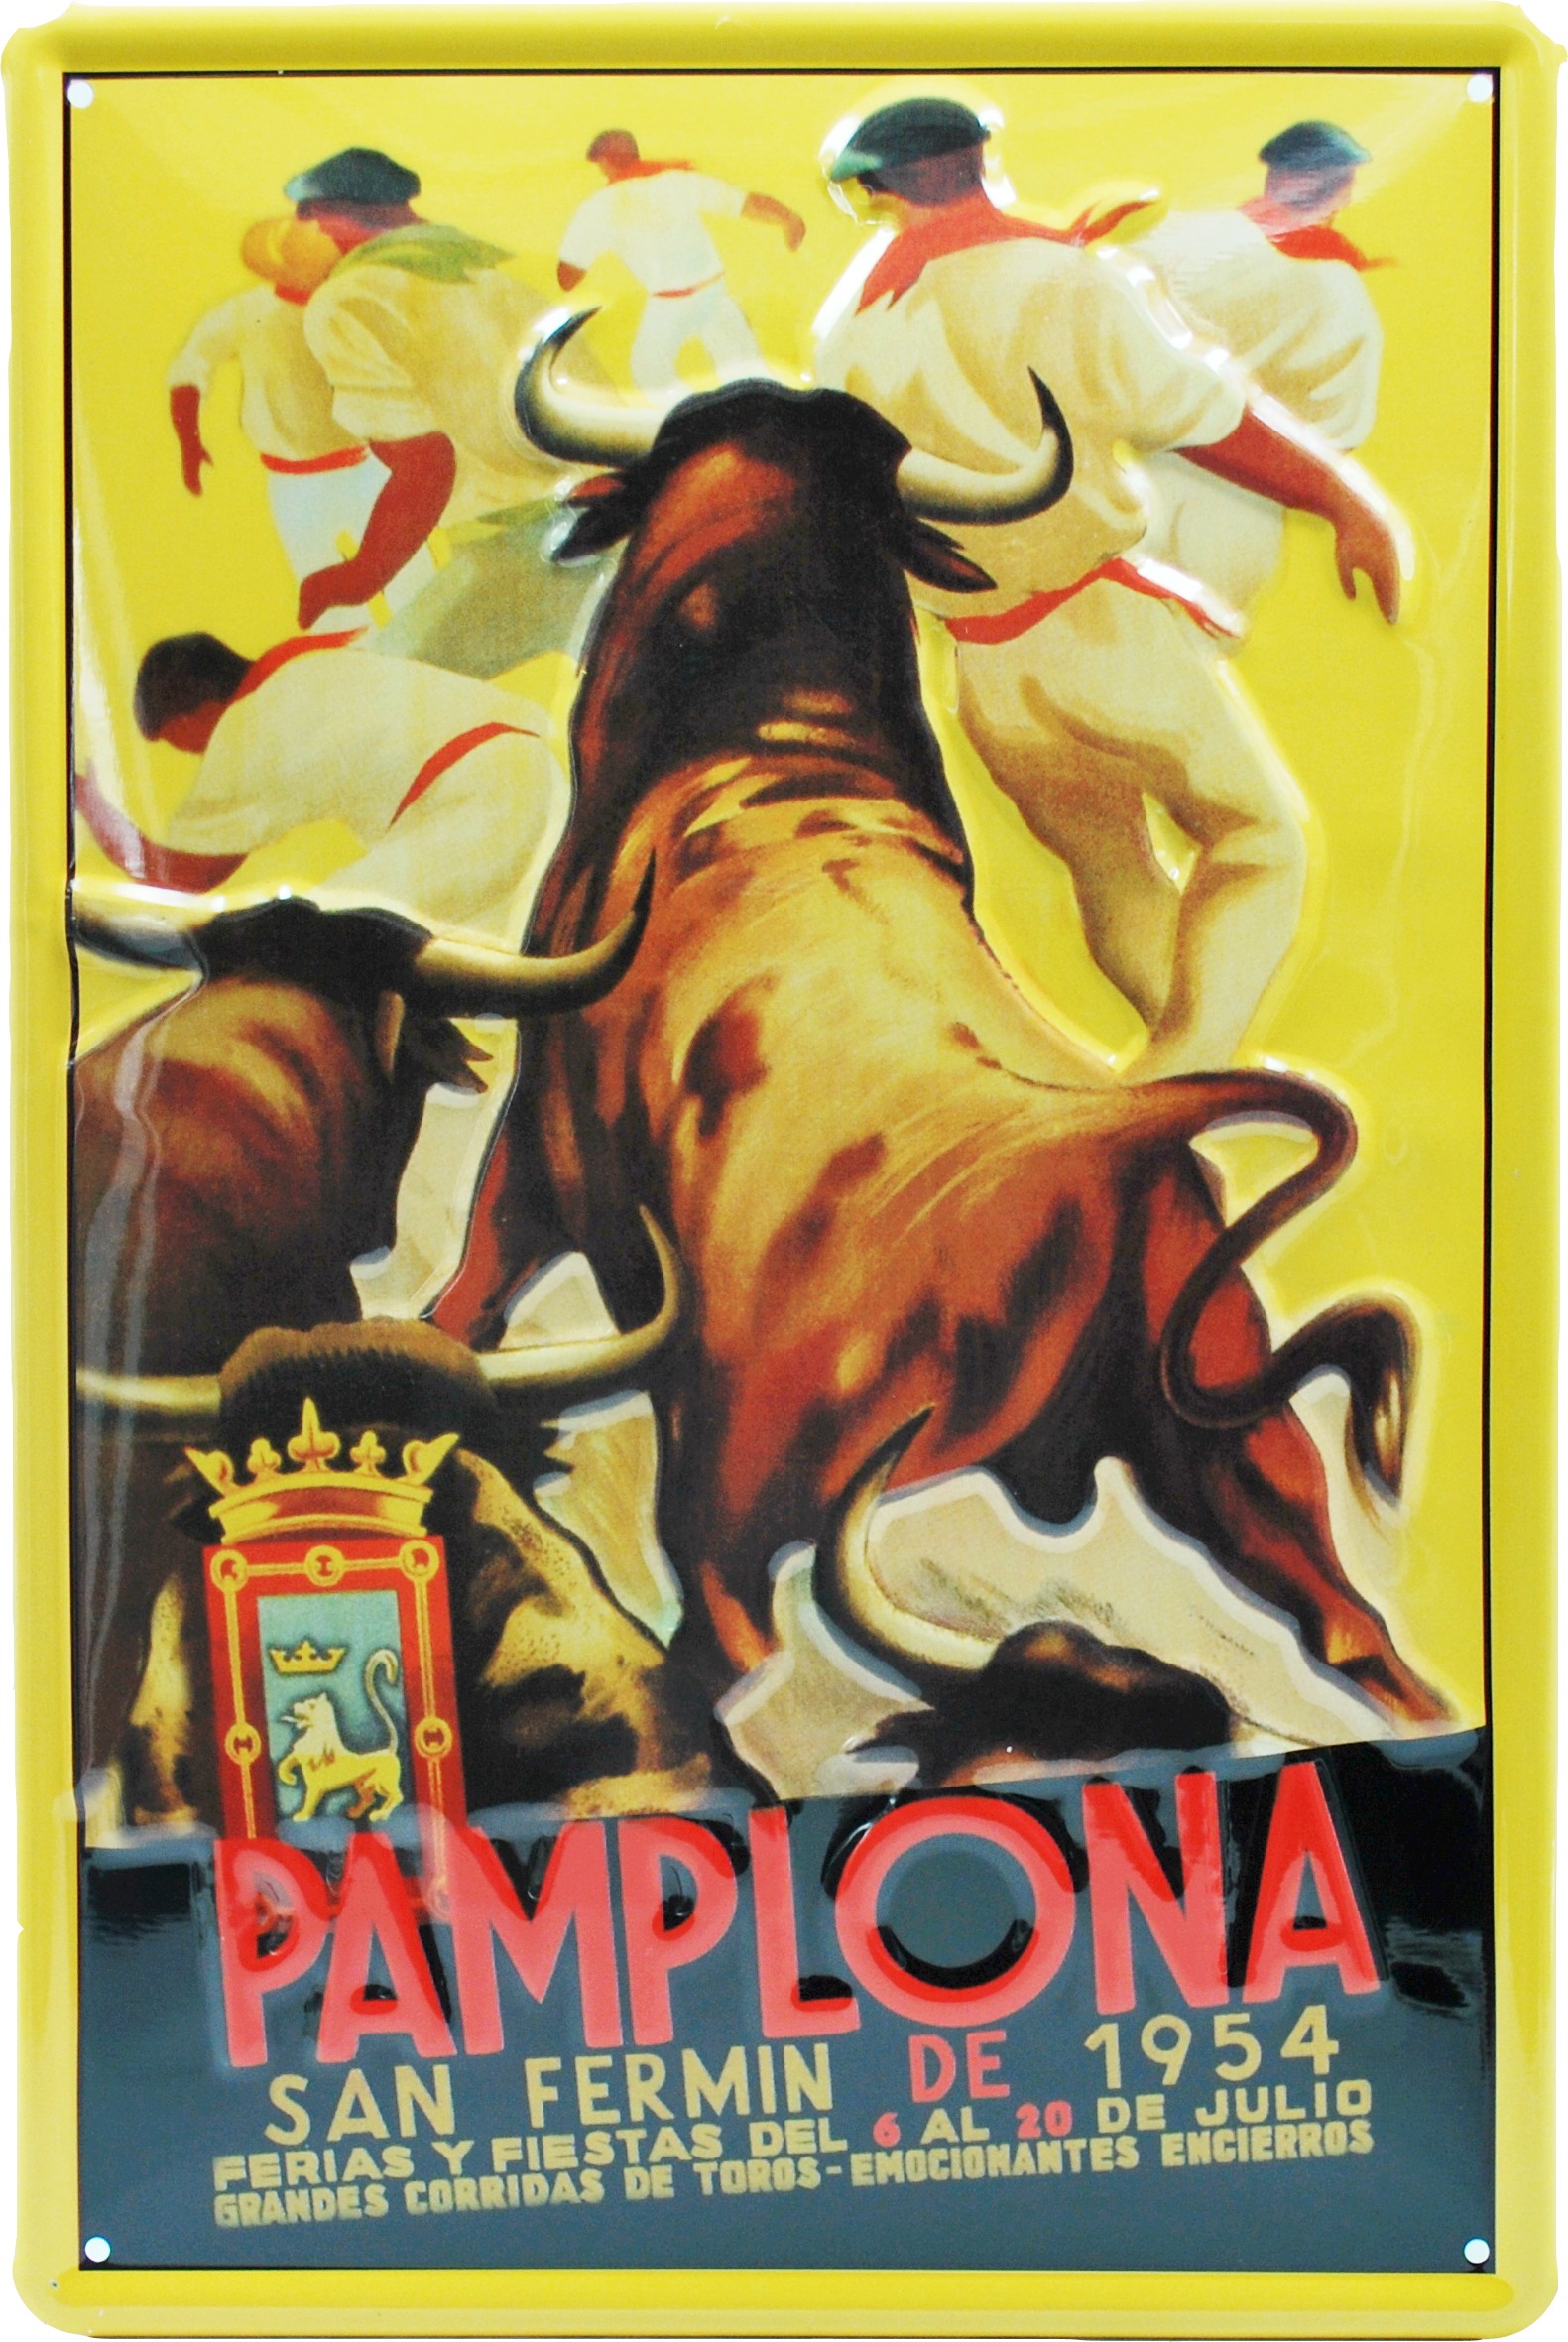 SanFermín 1954, Pamplona